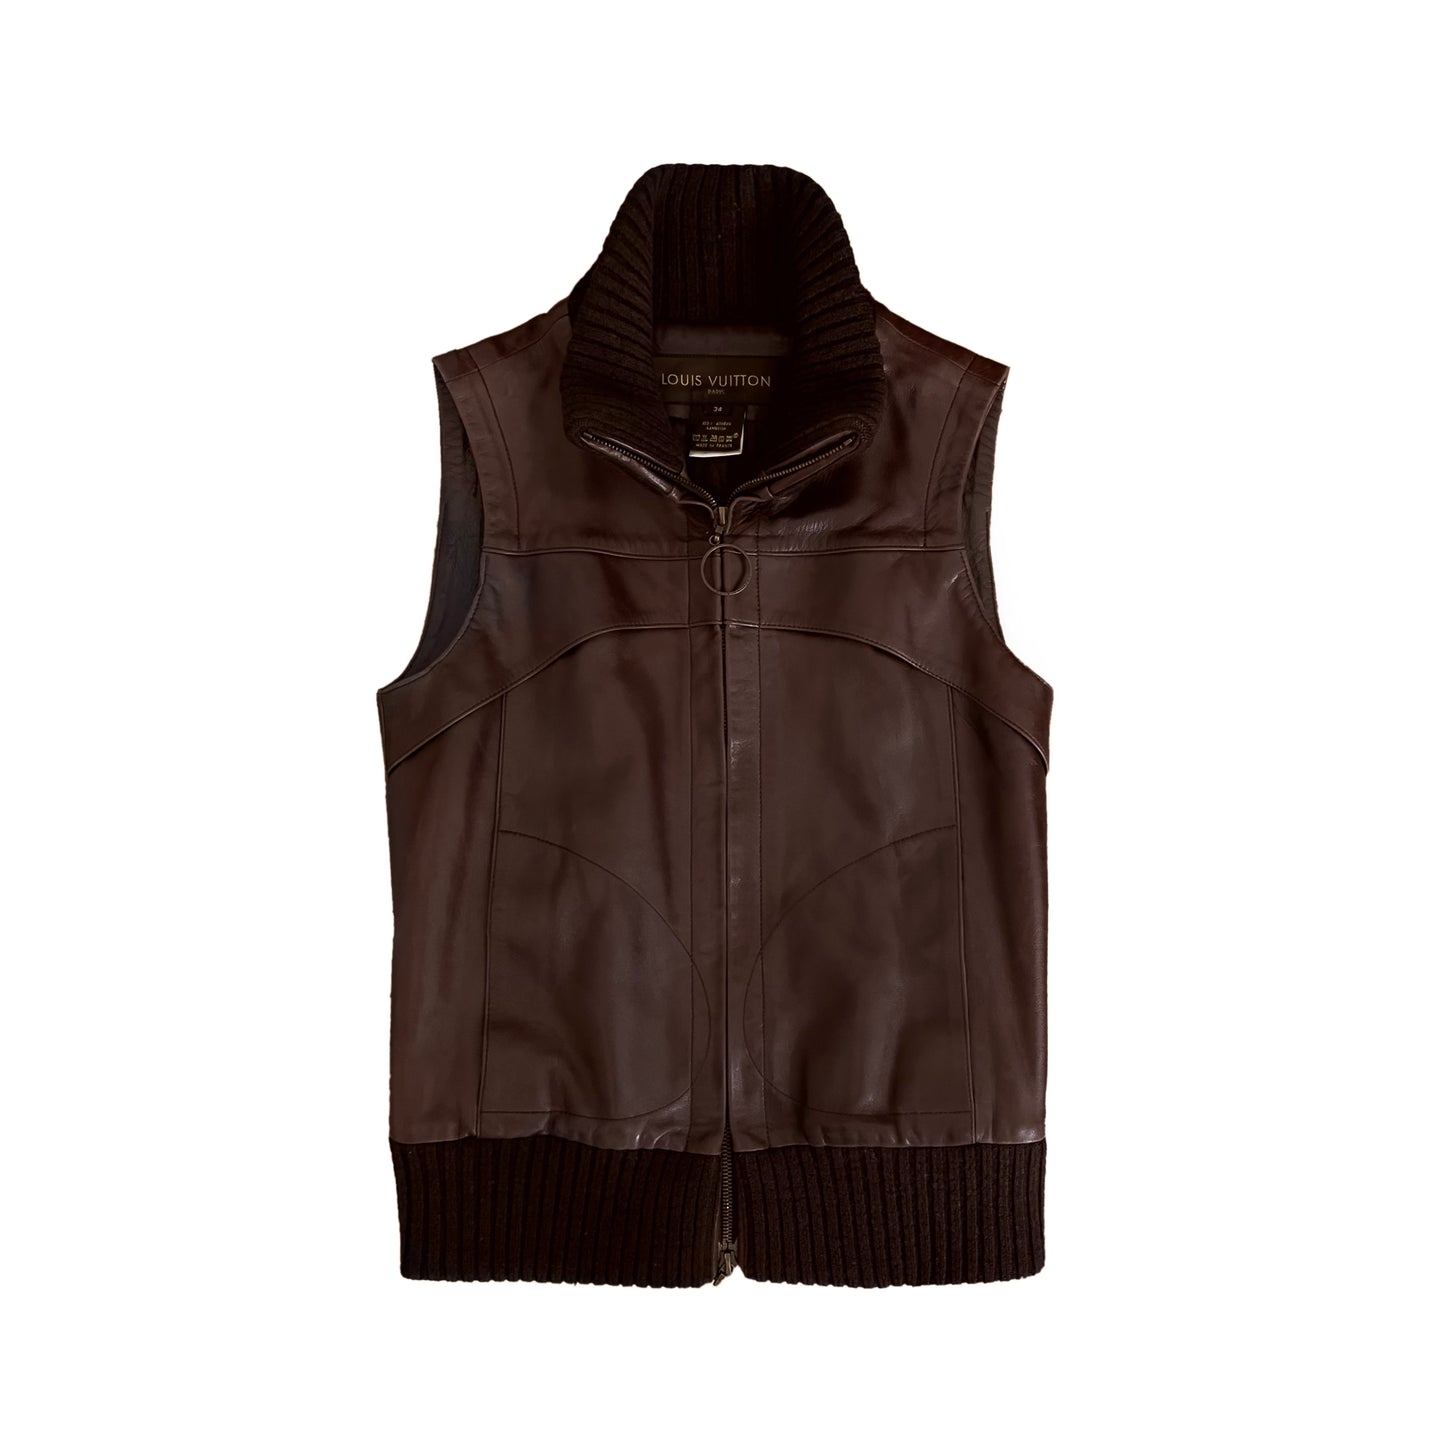 Louis Vuitton Louis Vuitton 19SS street style plain leather vest